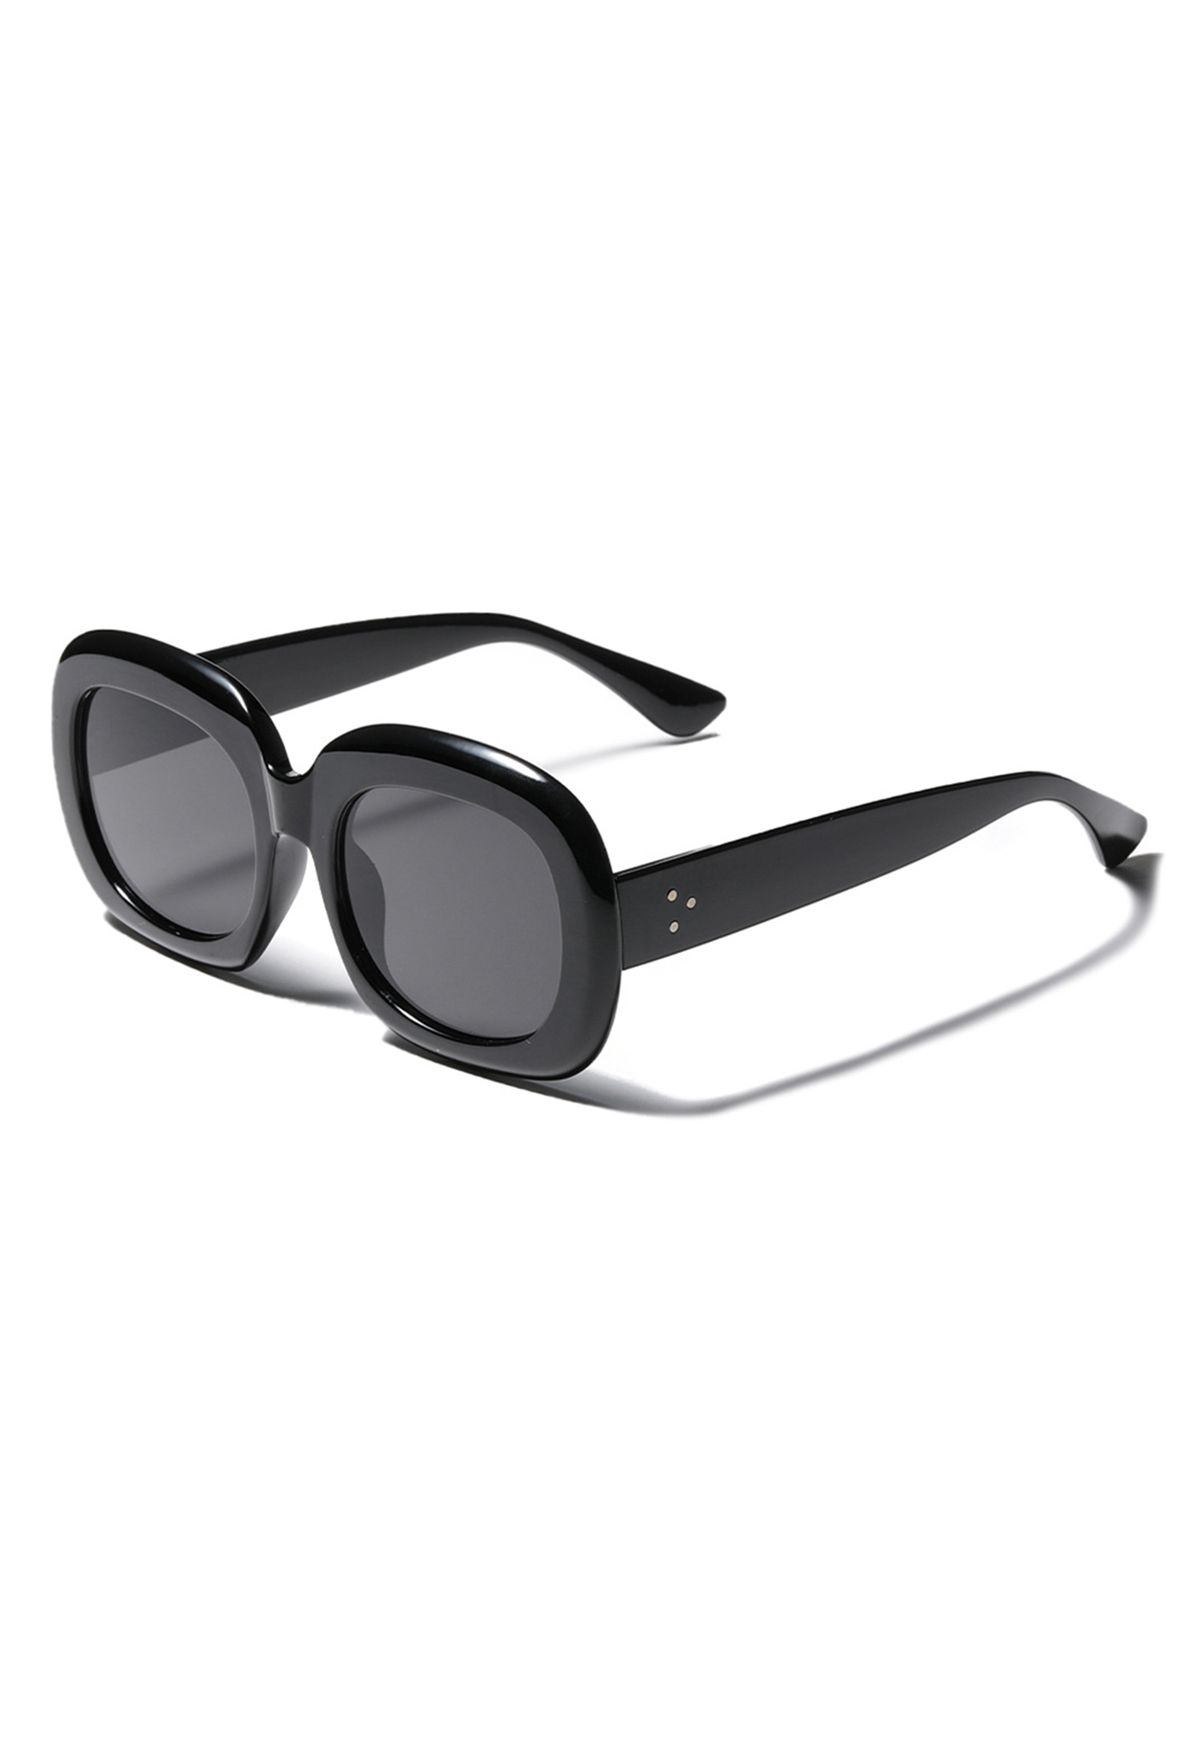 Gafas de sol con montura completa en negro con clase